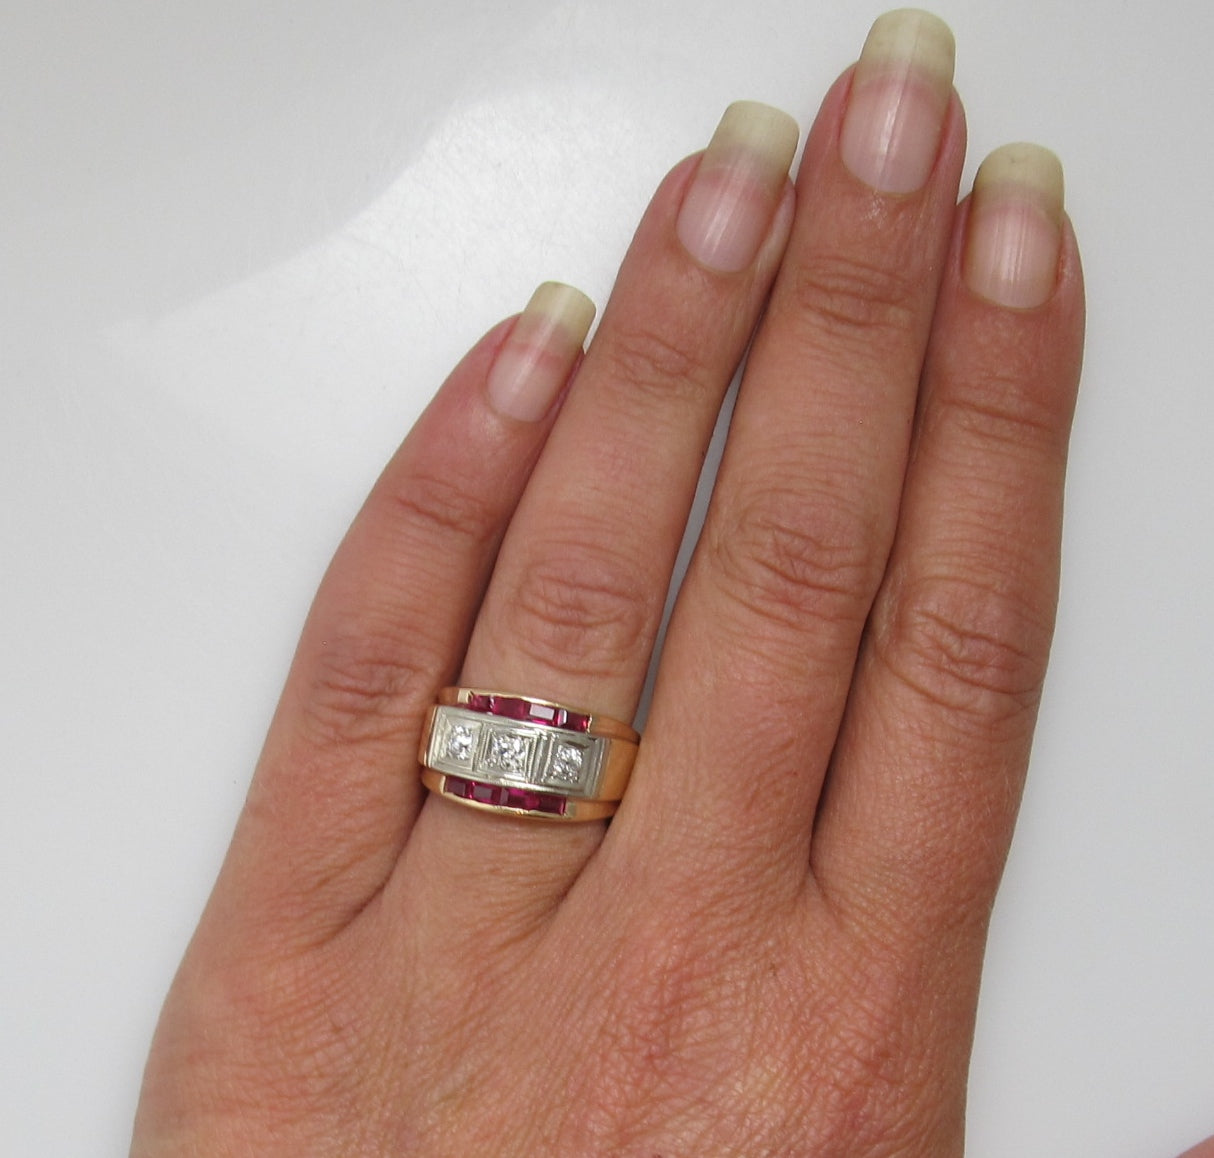 Vintage 3 stone diamond ring with rubies